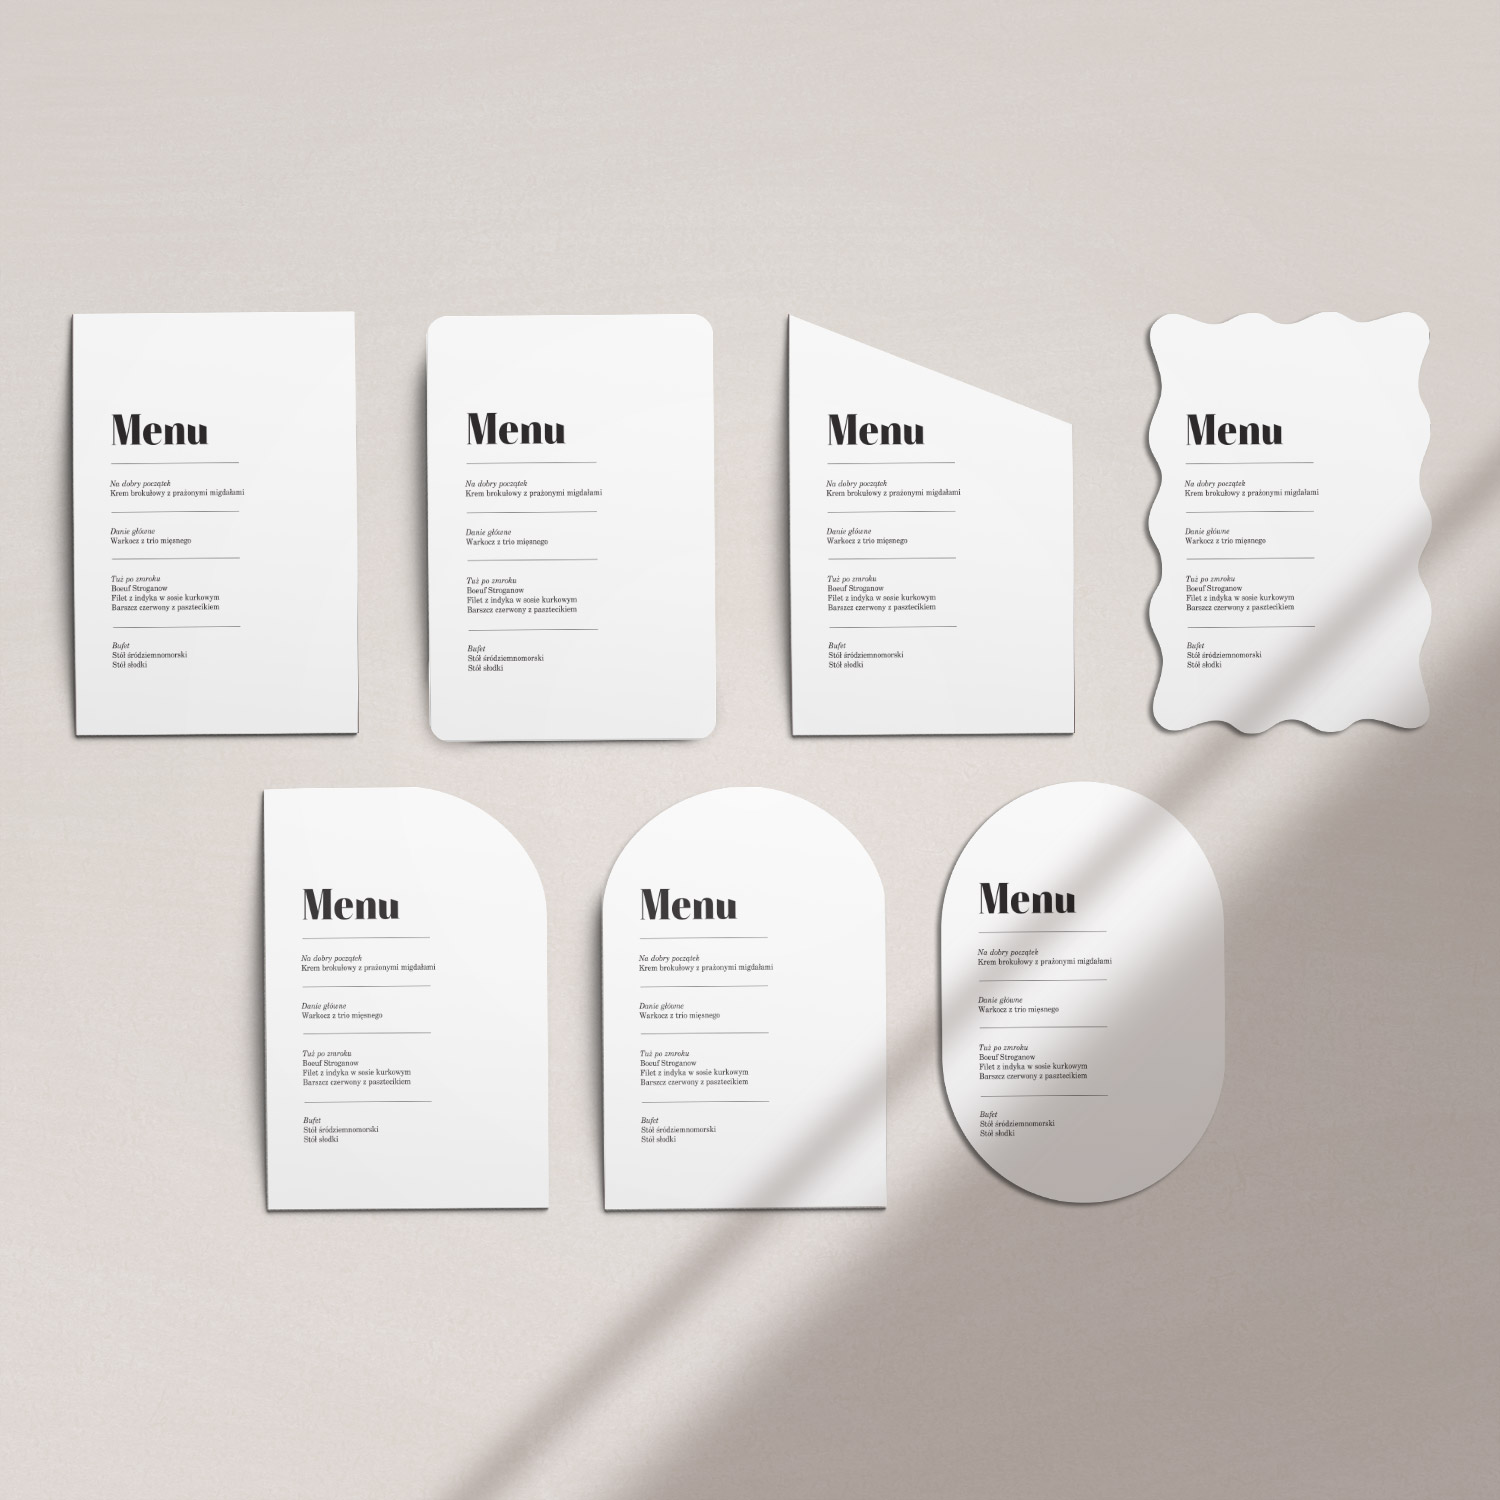 507 menu minimalizm ksztalty